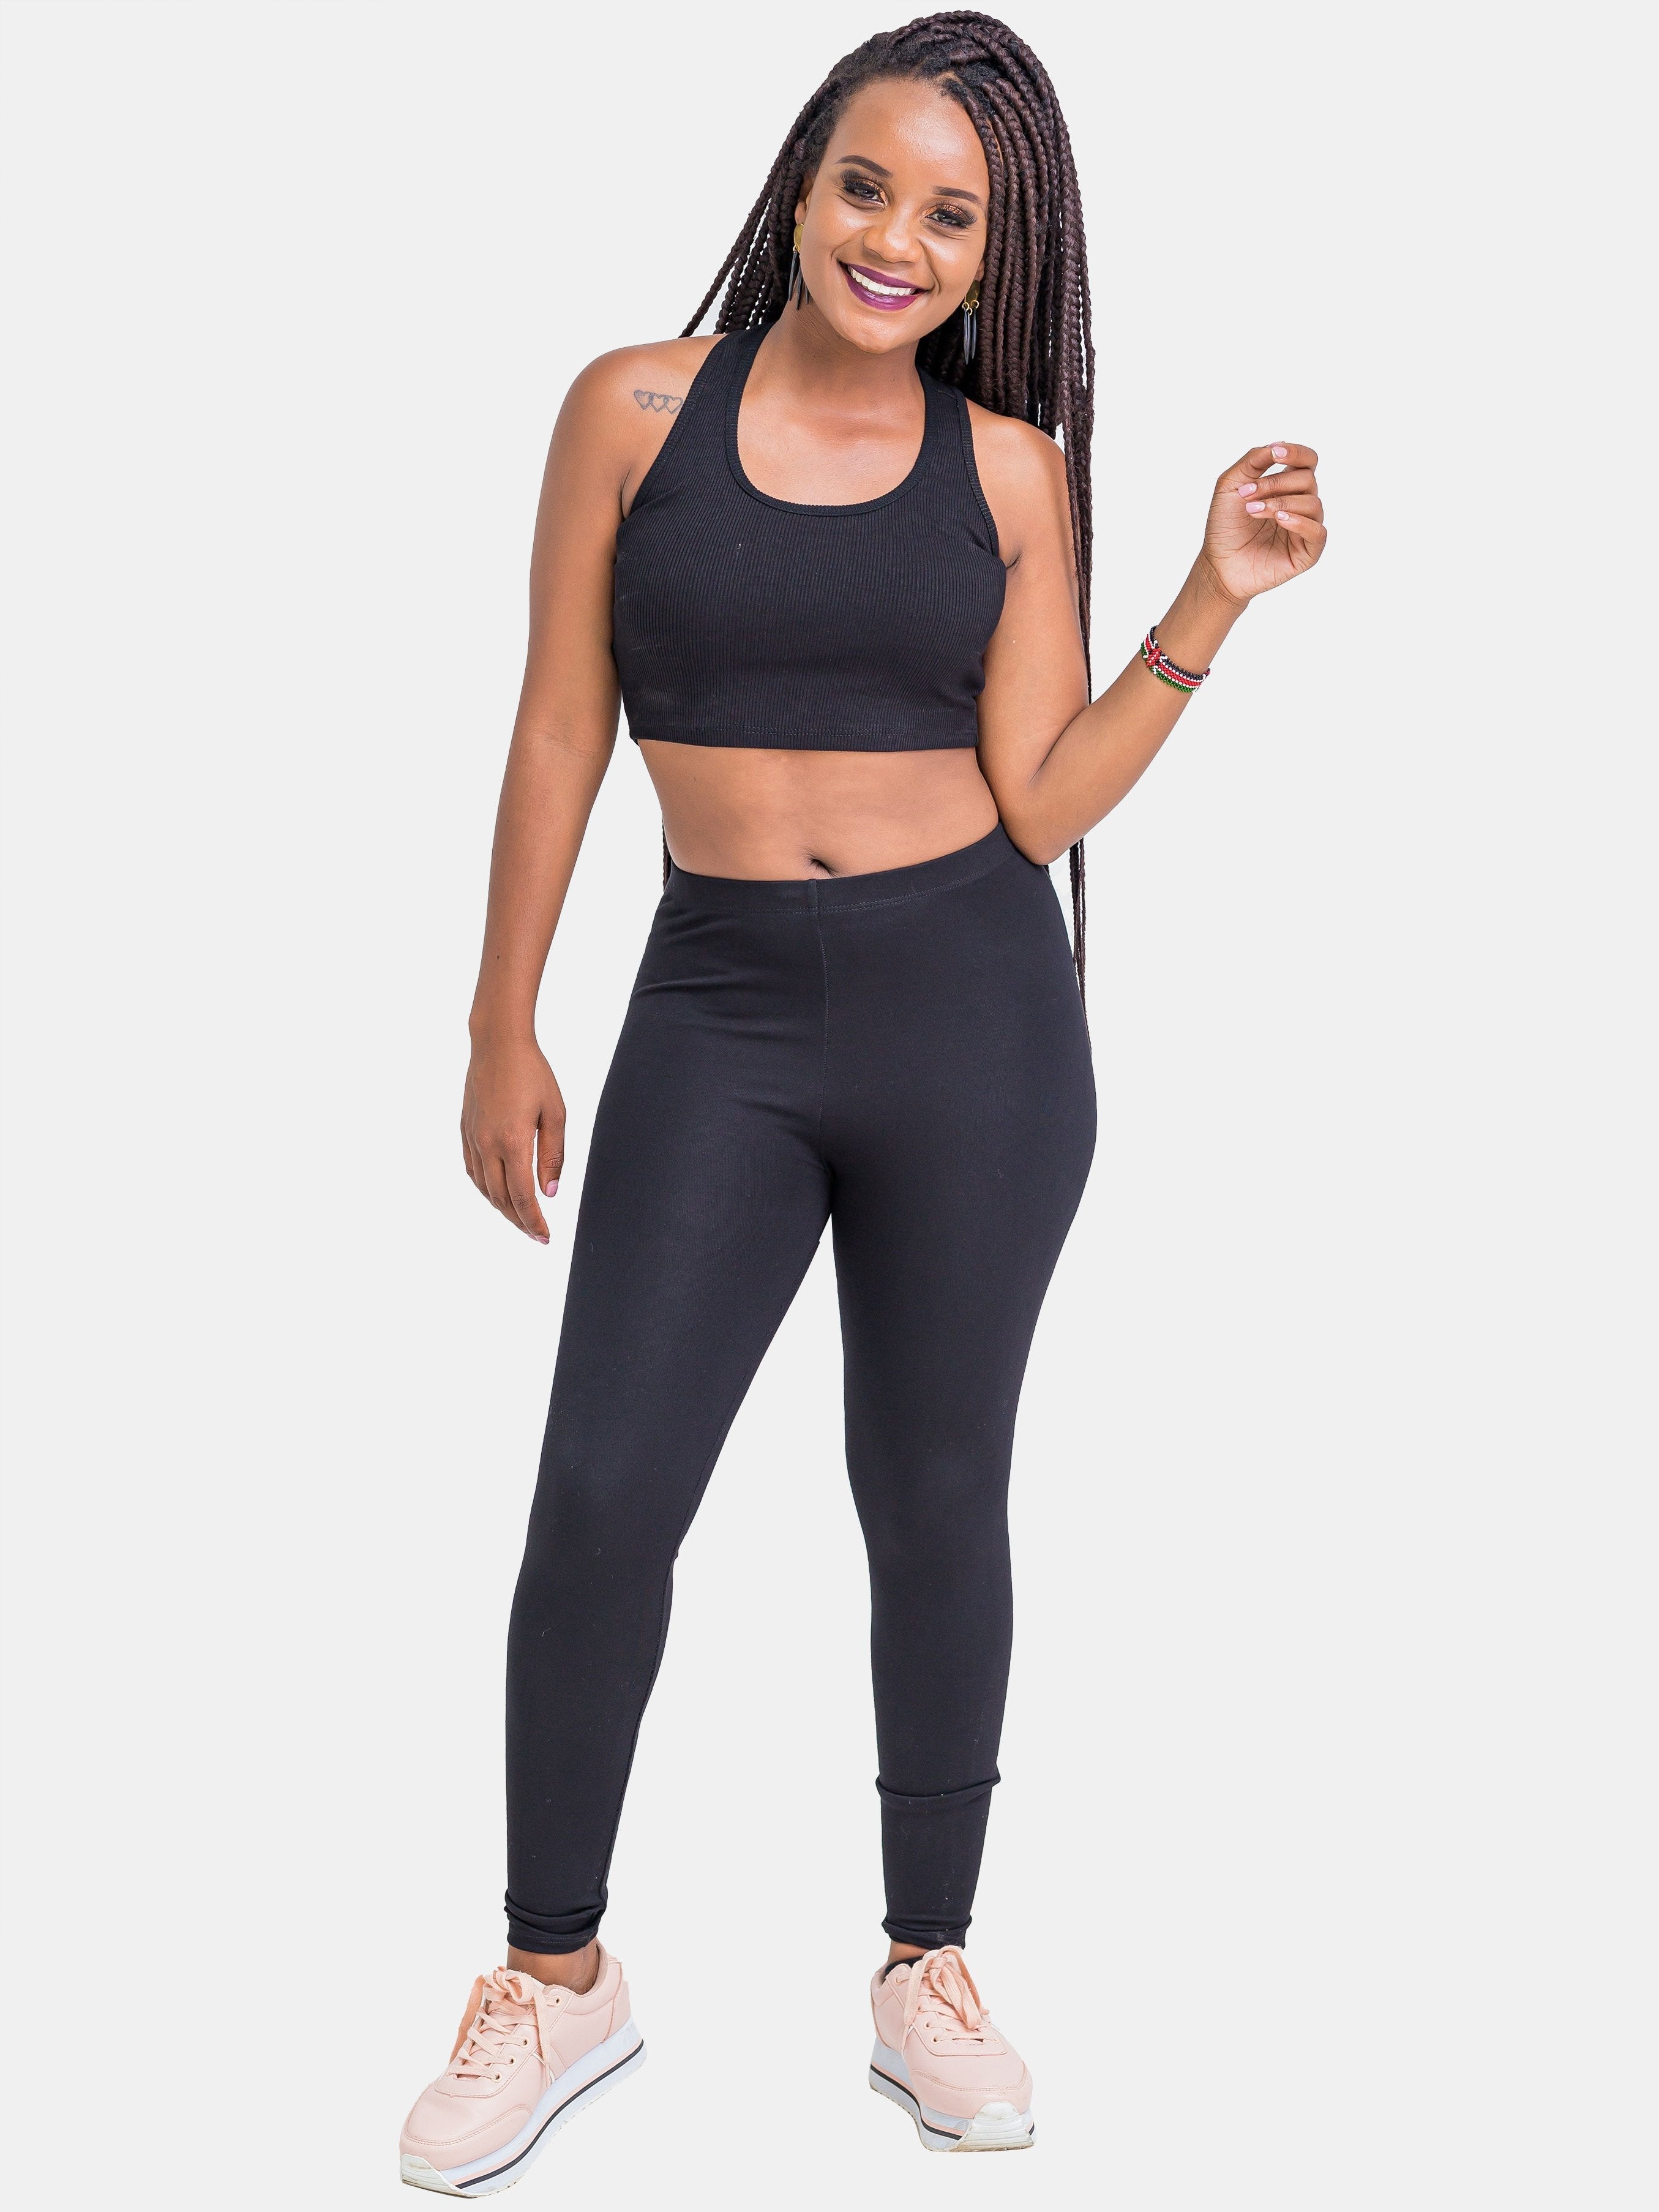 Buy Workout Leggings online - Best Price in Kenya